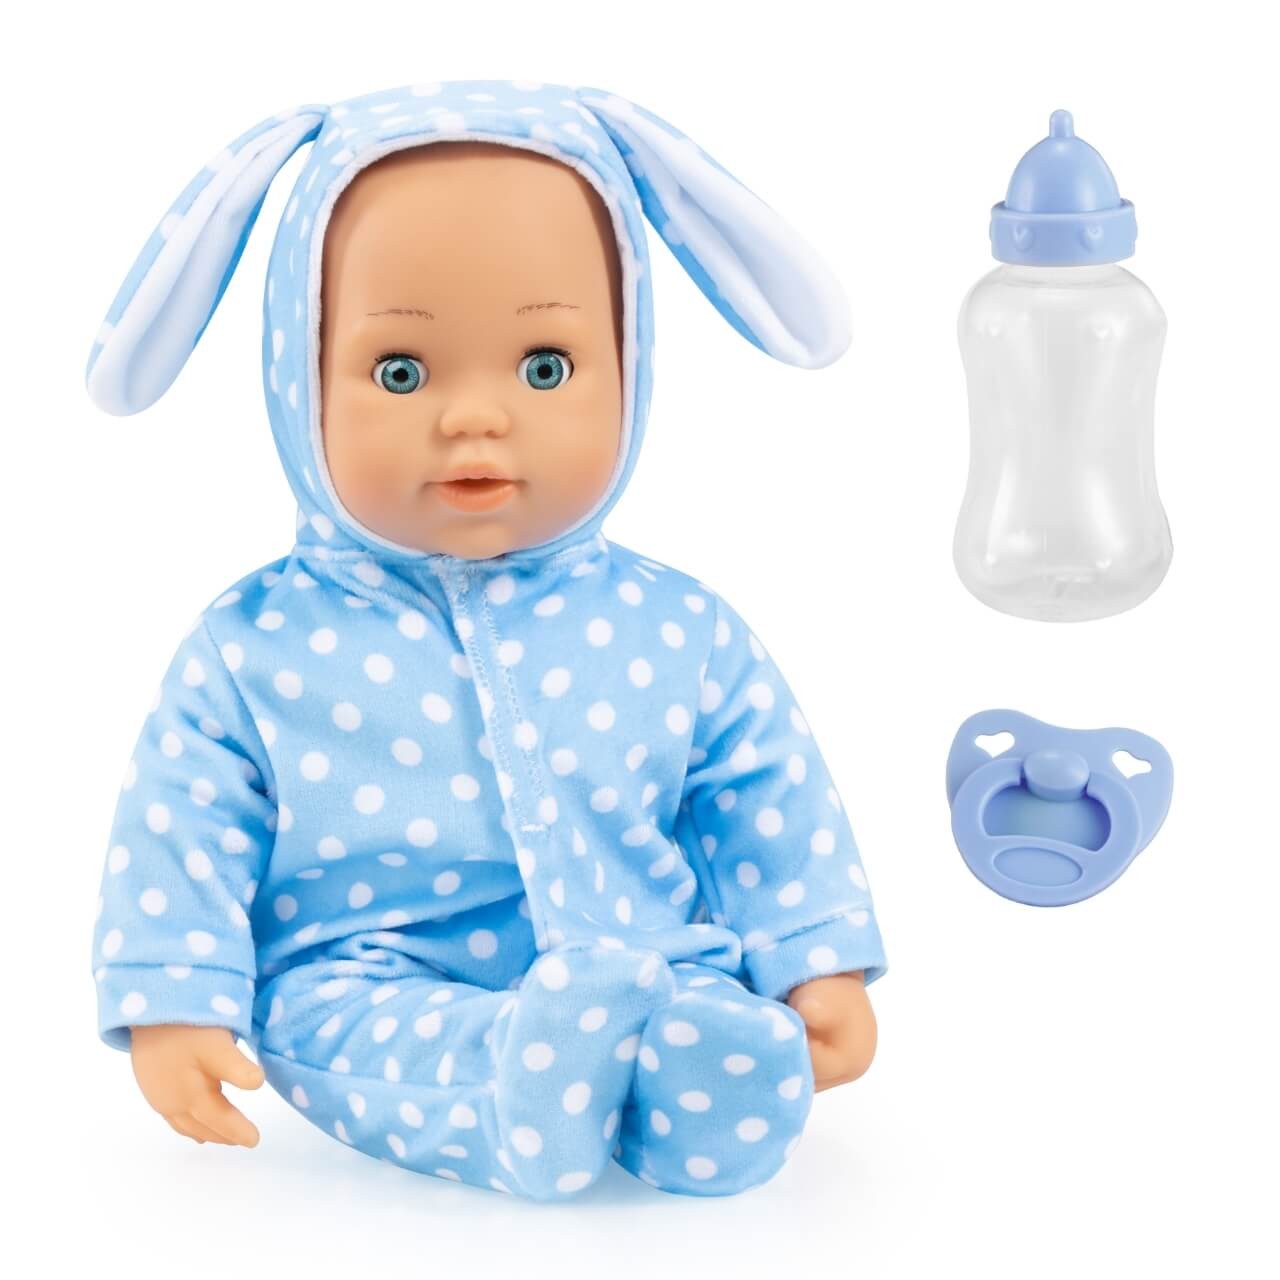 Puppe Anna First Words Baby 38 cm, blaues Outfit von Bayer Design